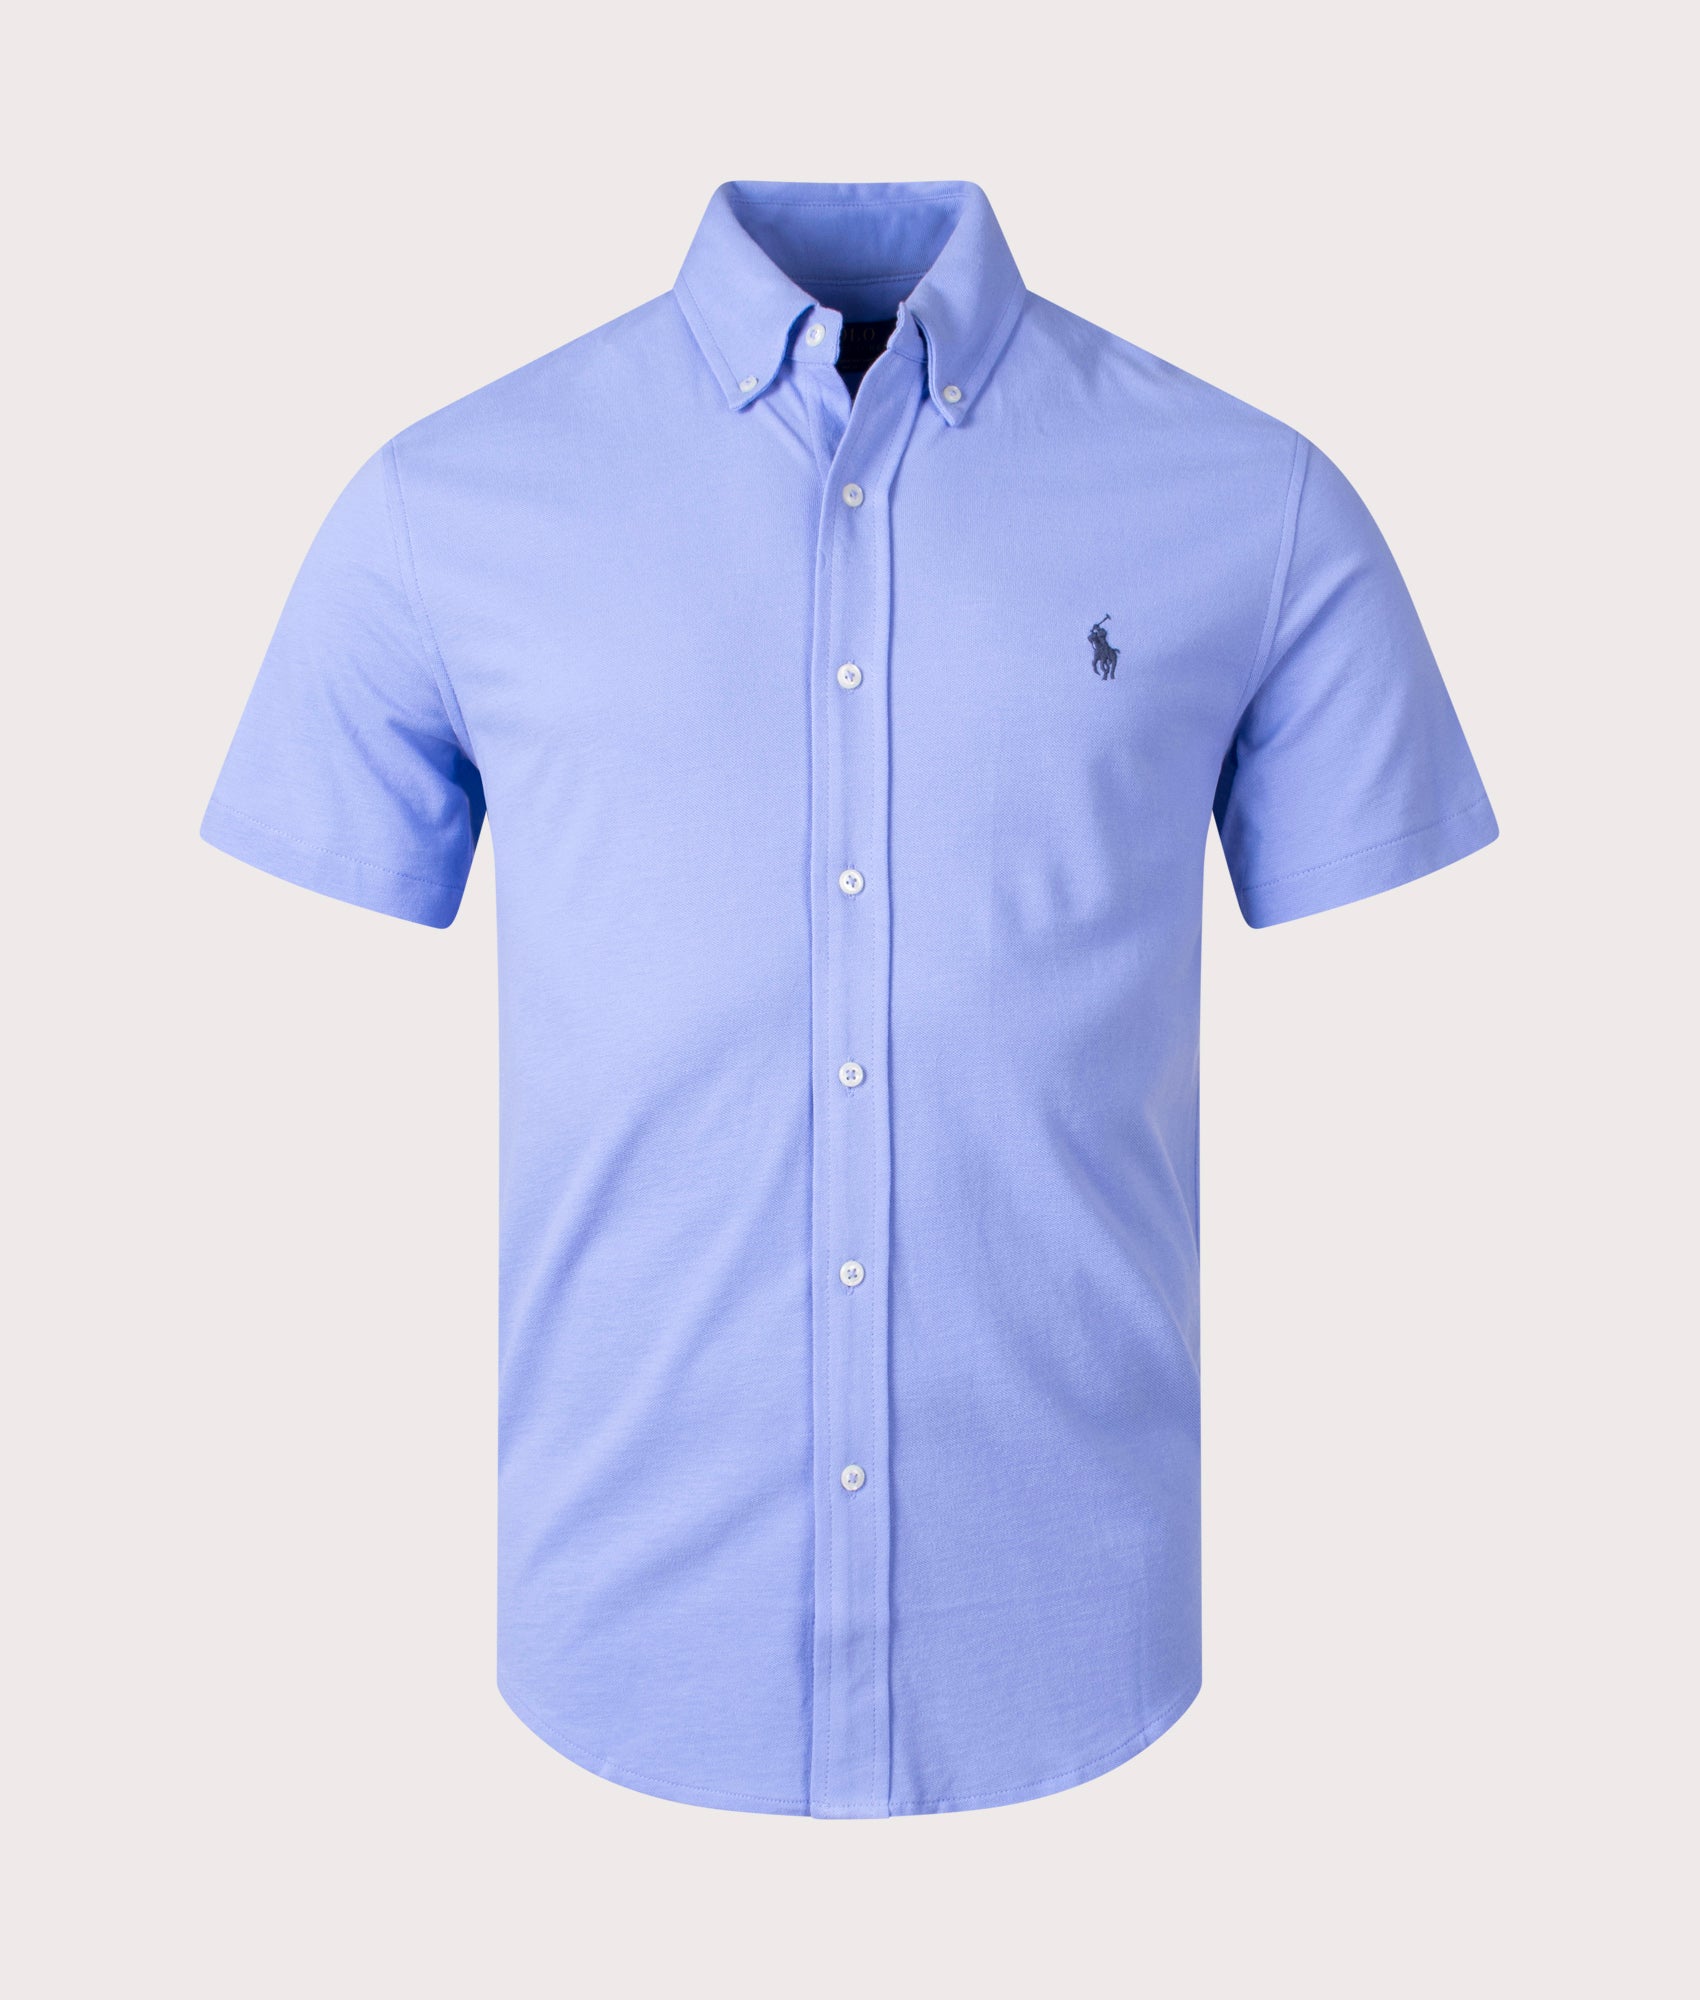 Featherweight Mesh Short Sleeve Shirt Blue, Polo Ralph Lauren